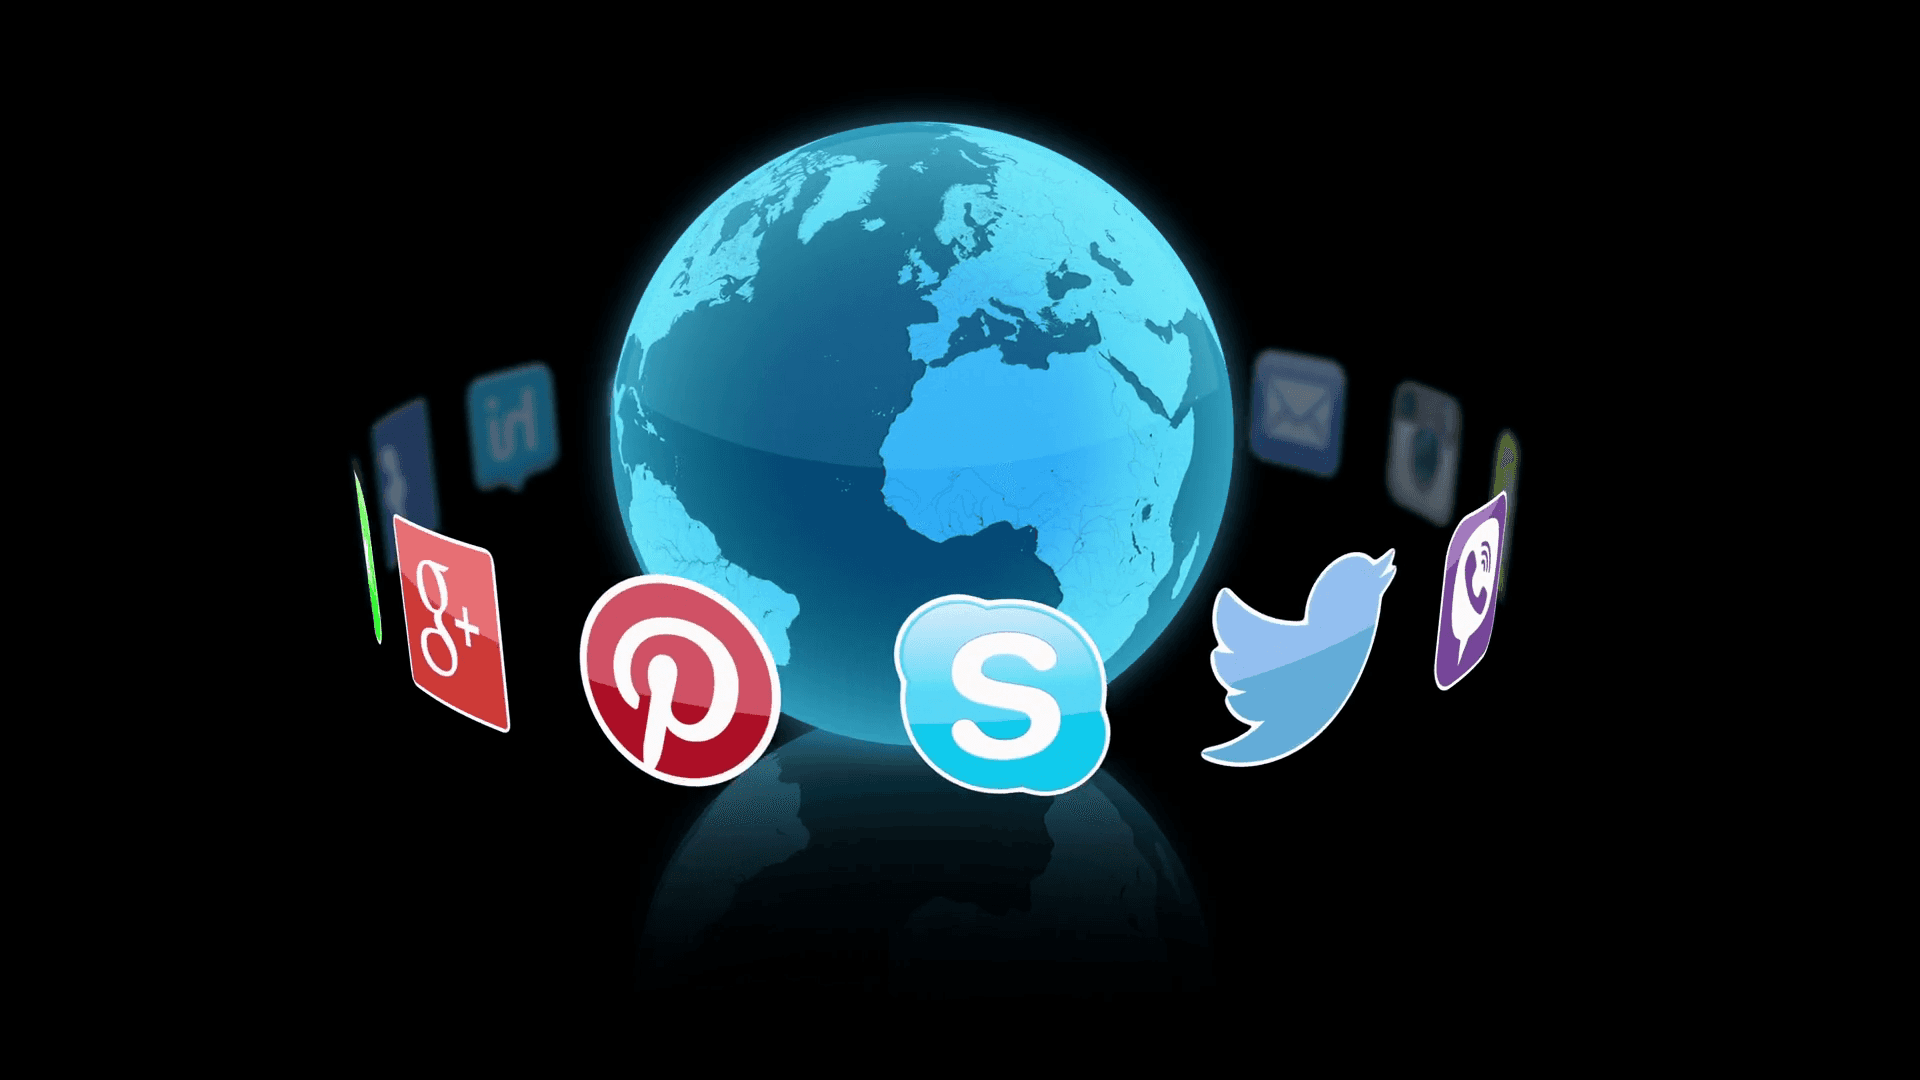 Rafforzarele Connessioni Attraverso I Social Media